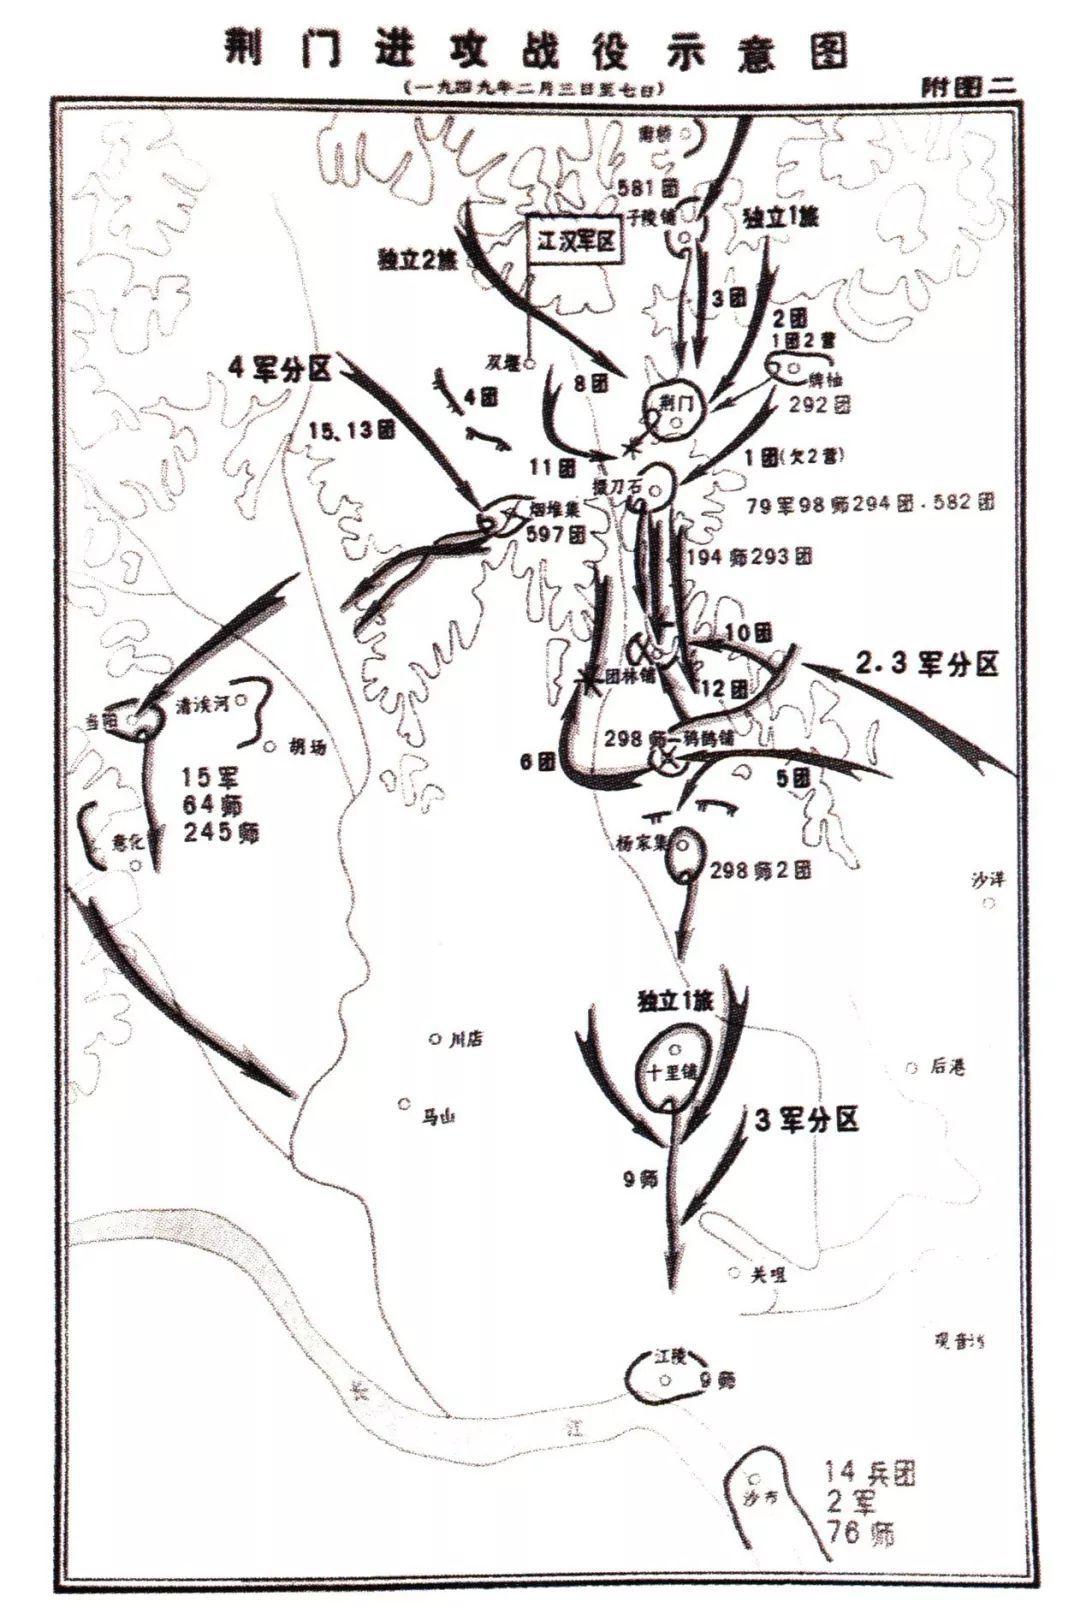 1949年1月20日,江汉军区部队发起荆门战役,歼灭敌79军.